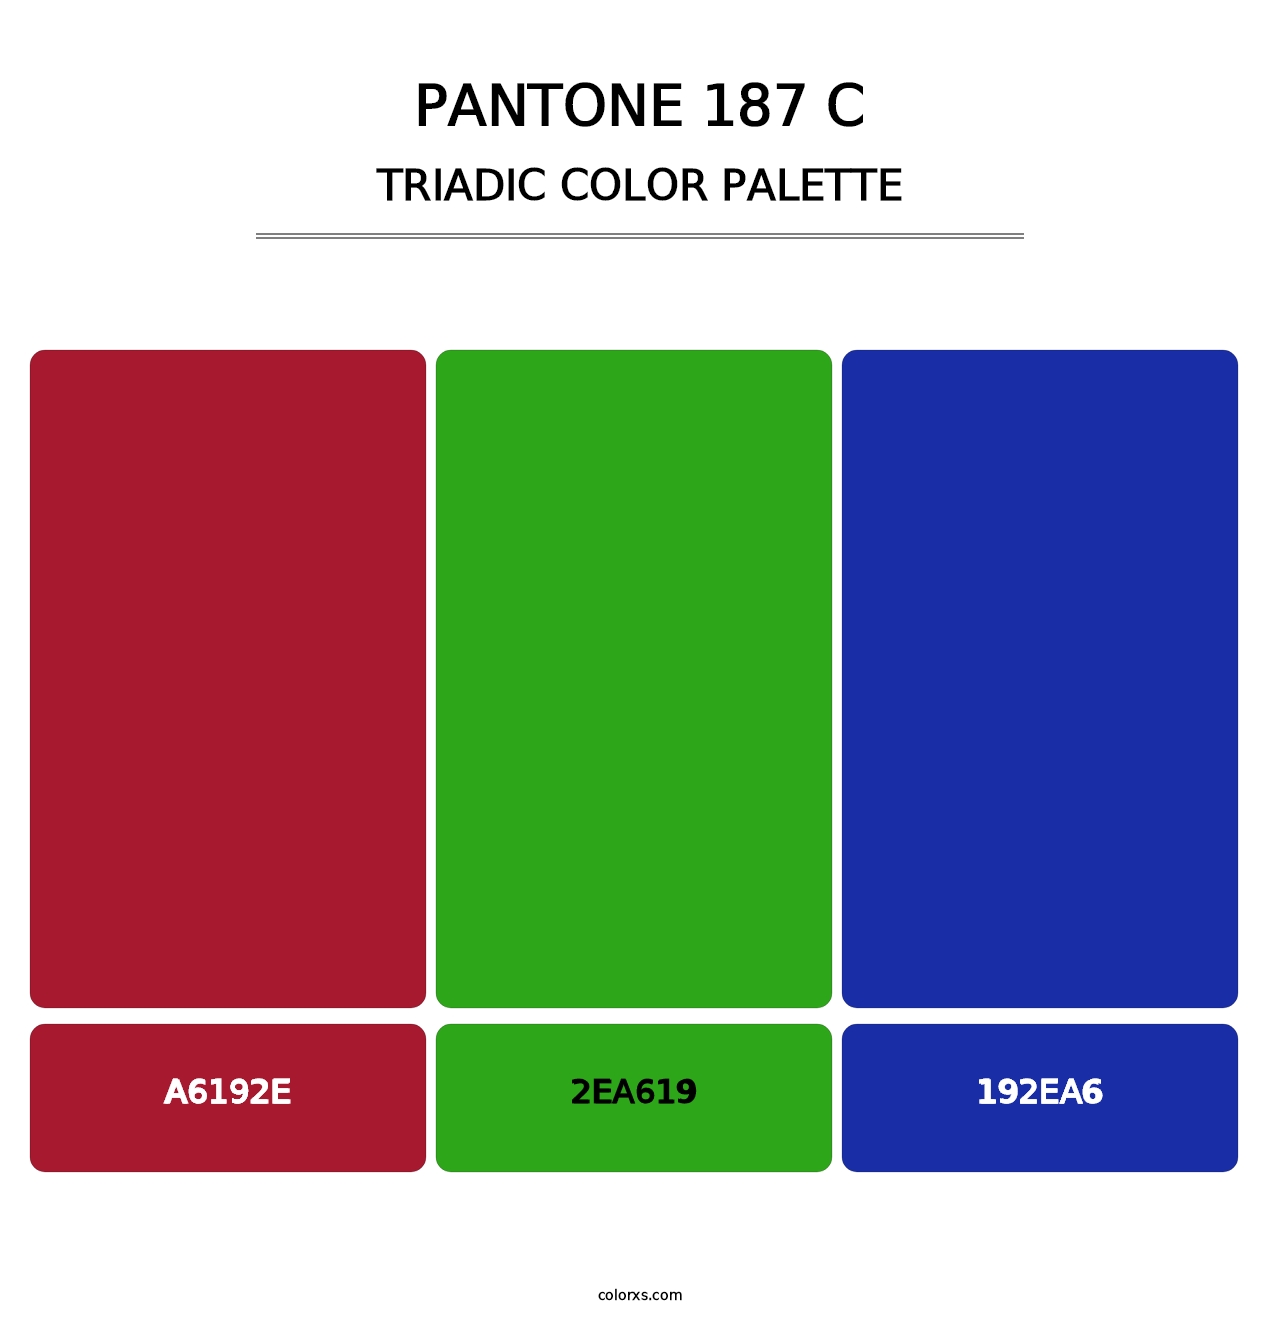 PANTONE 187 C - Triadic Color Palette